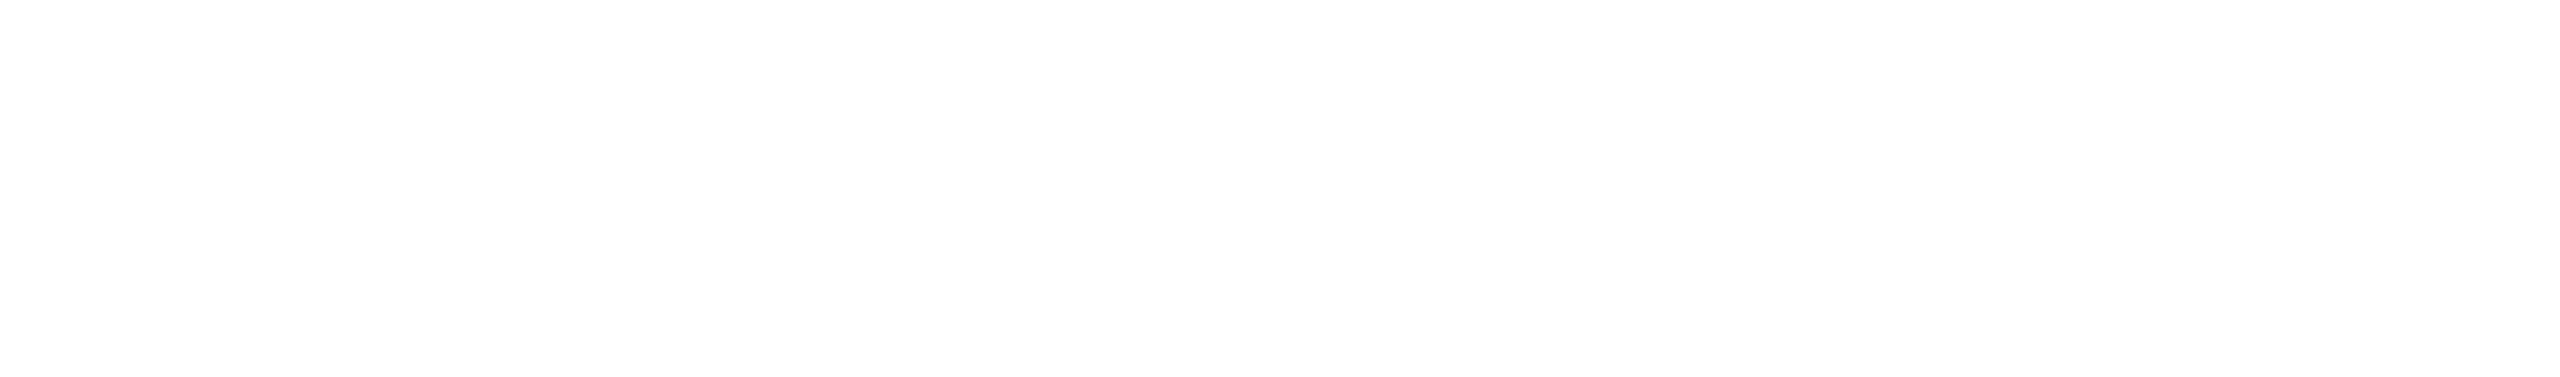 Wit Bose logo